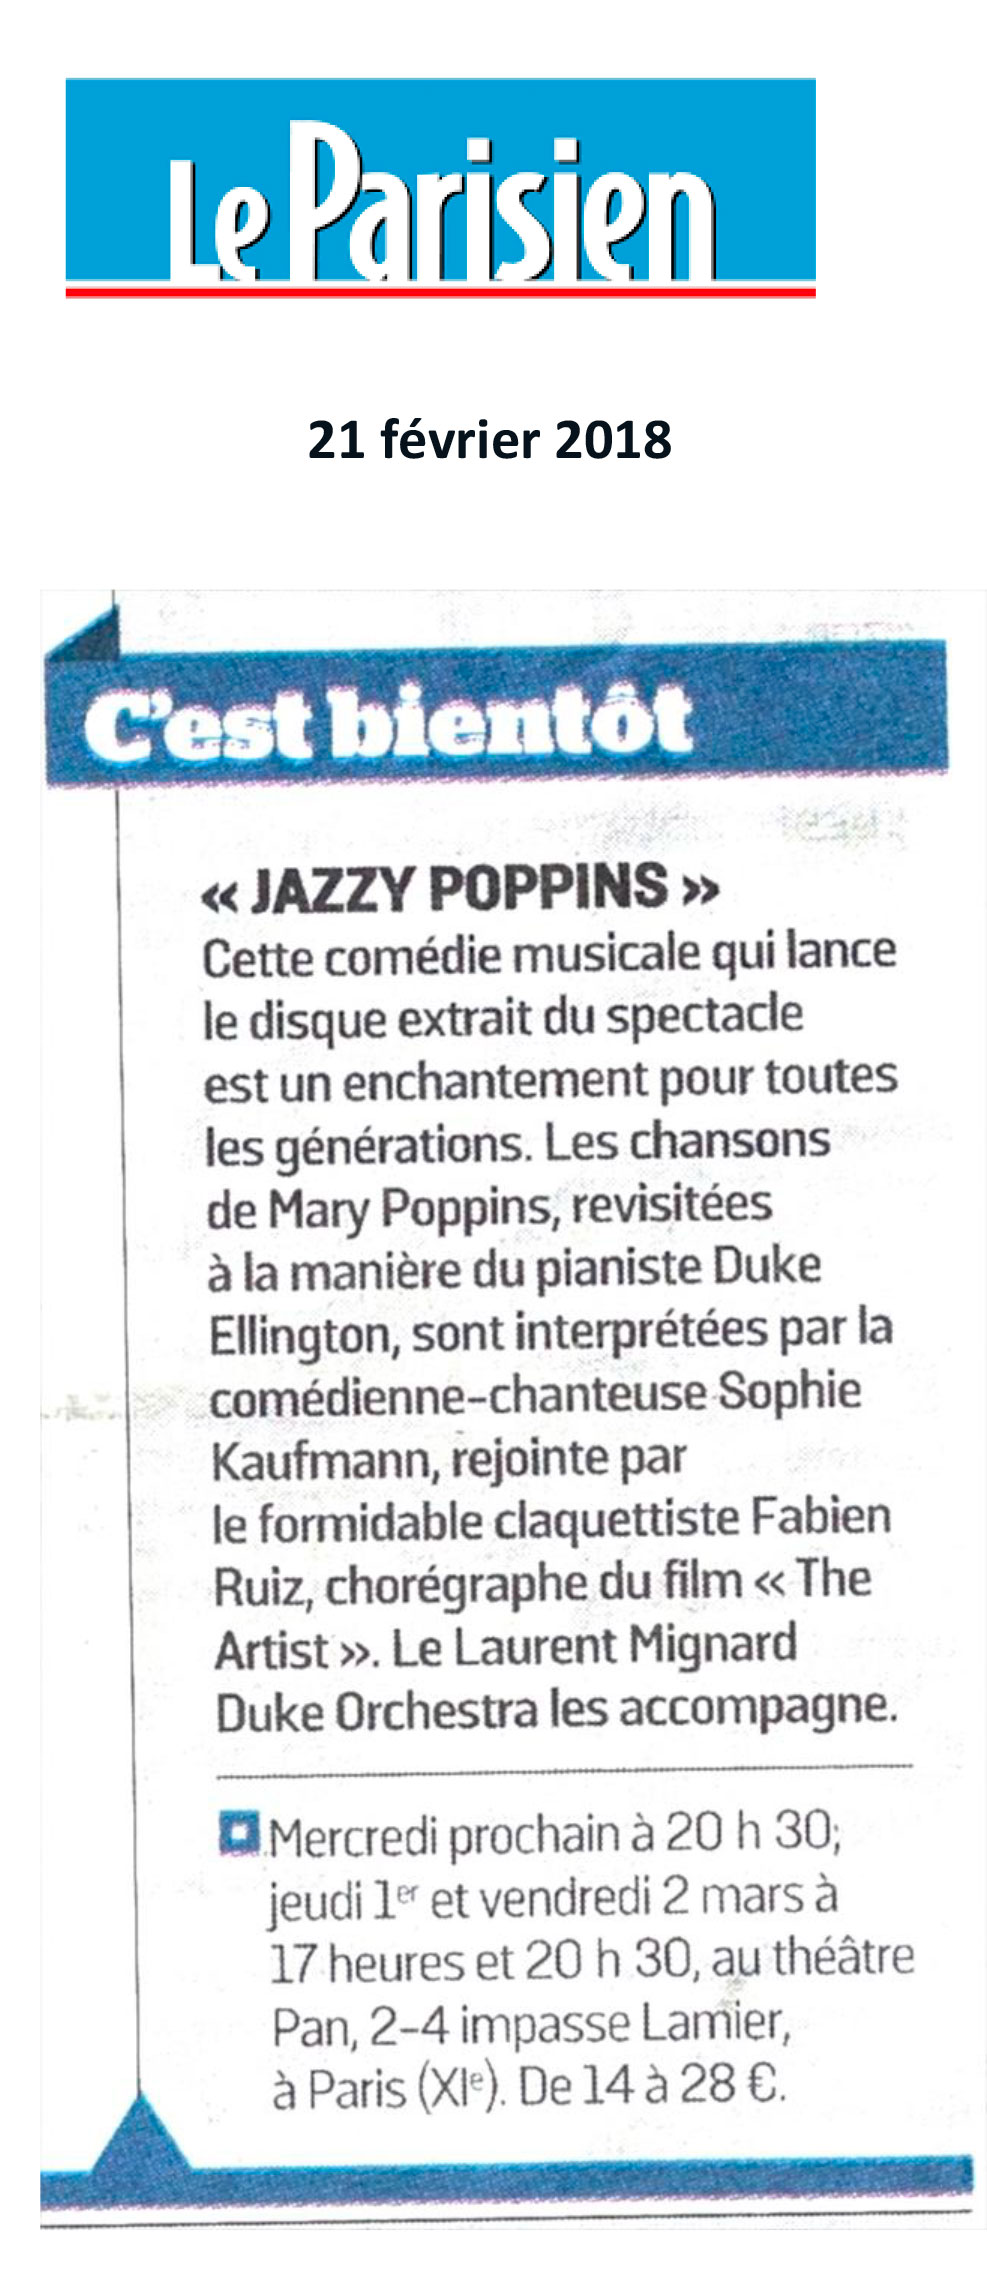 Le Parisien - Février 2018 - Jazzy Poppins